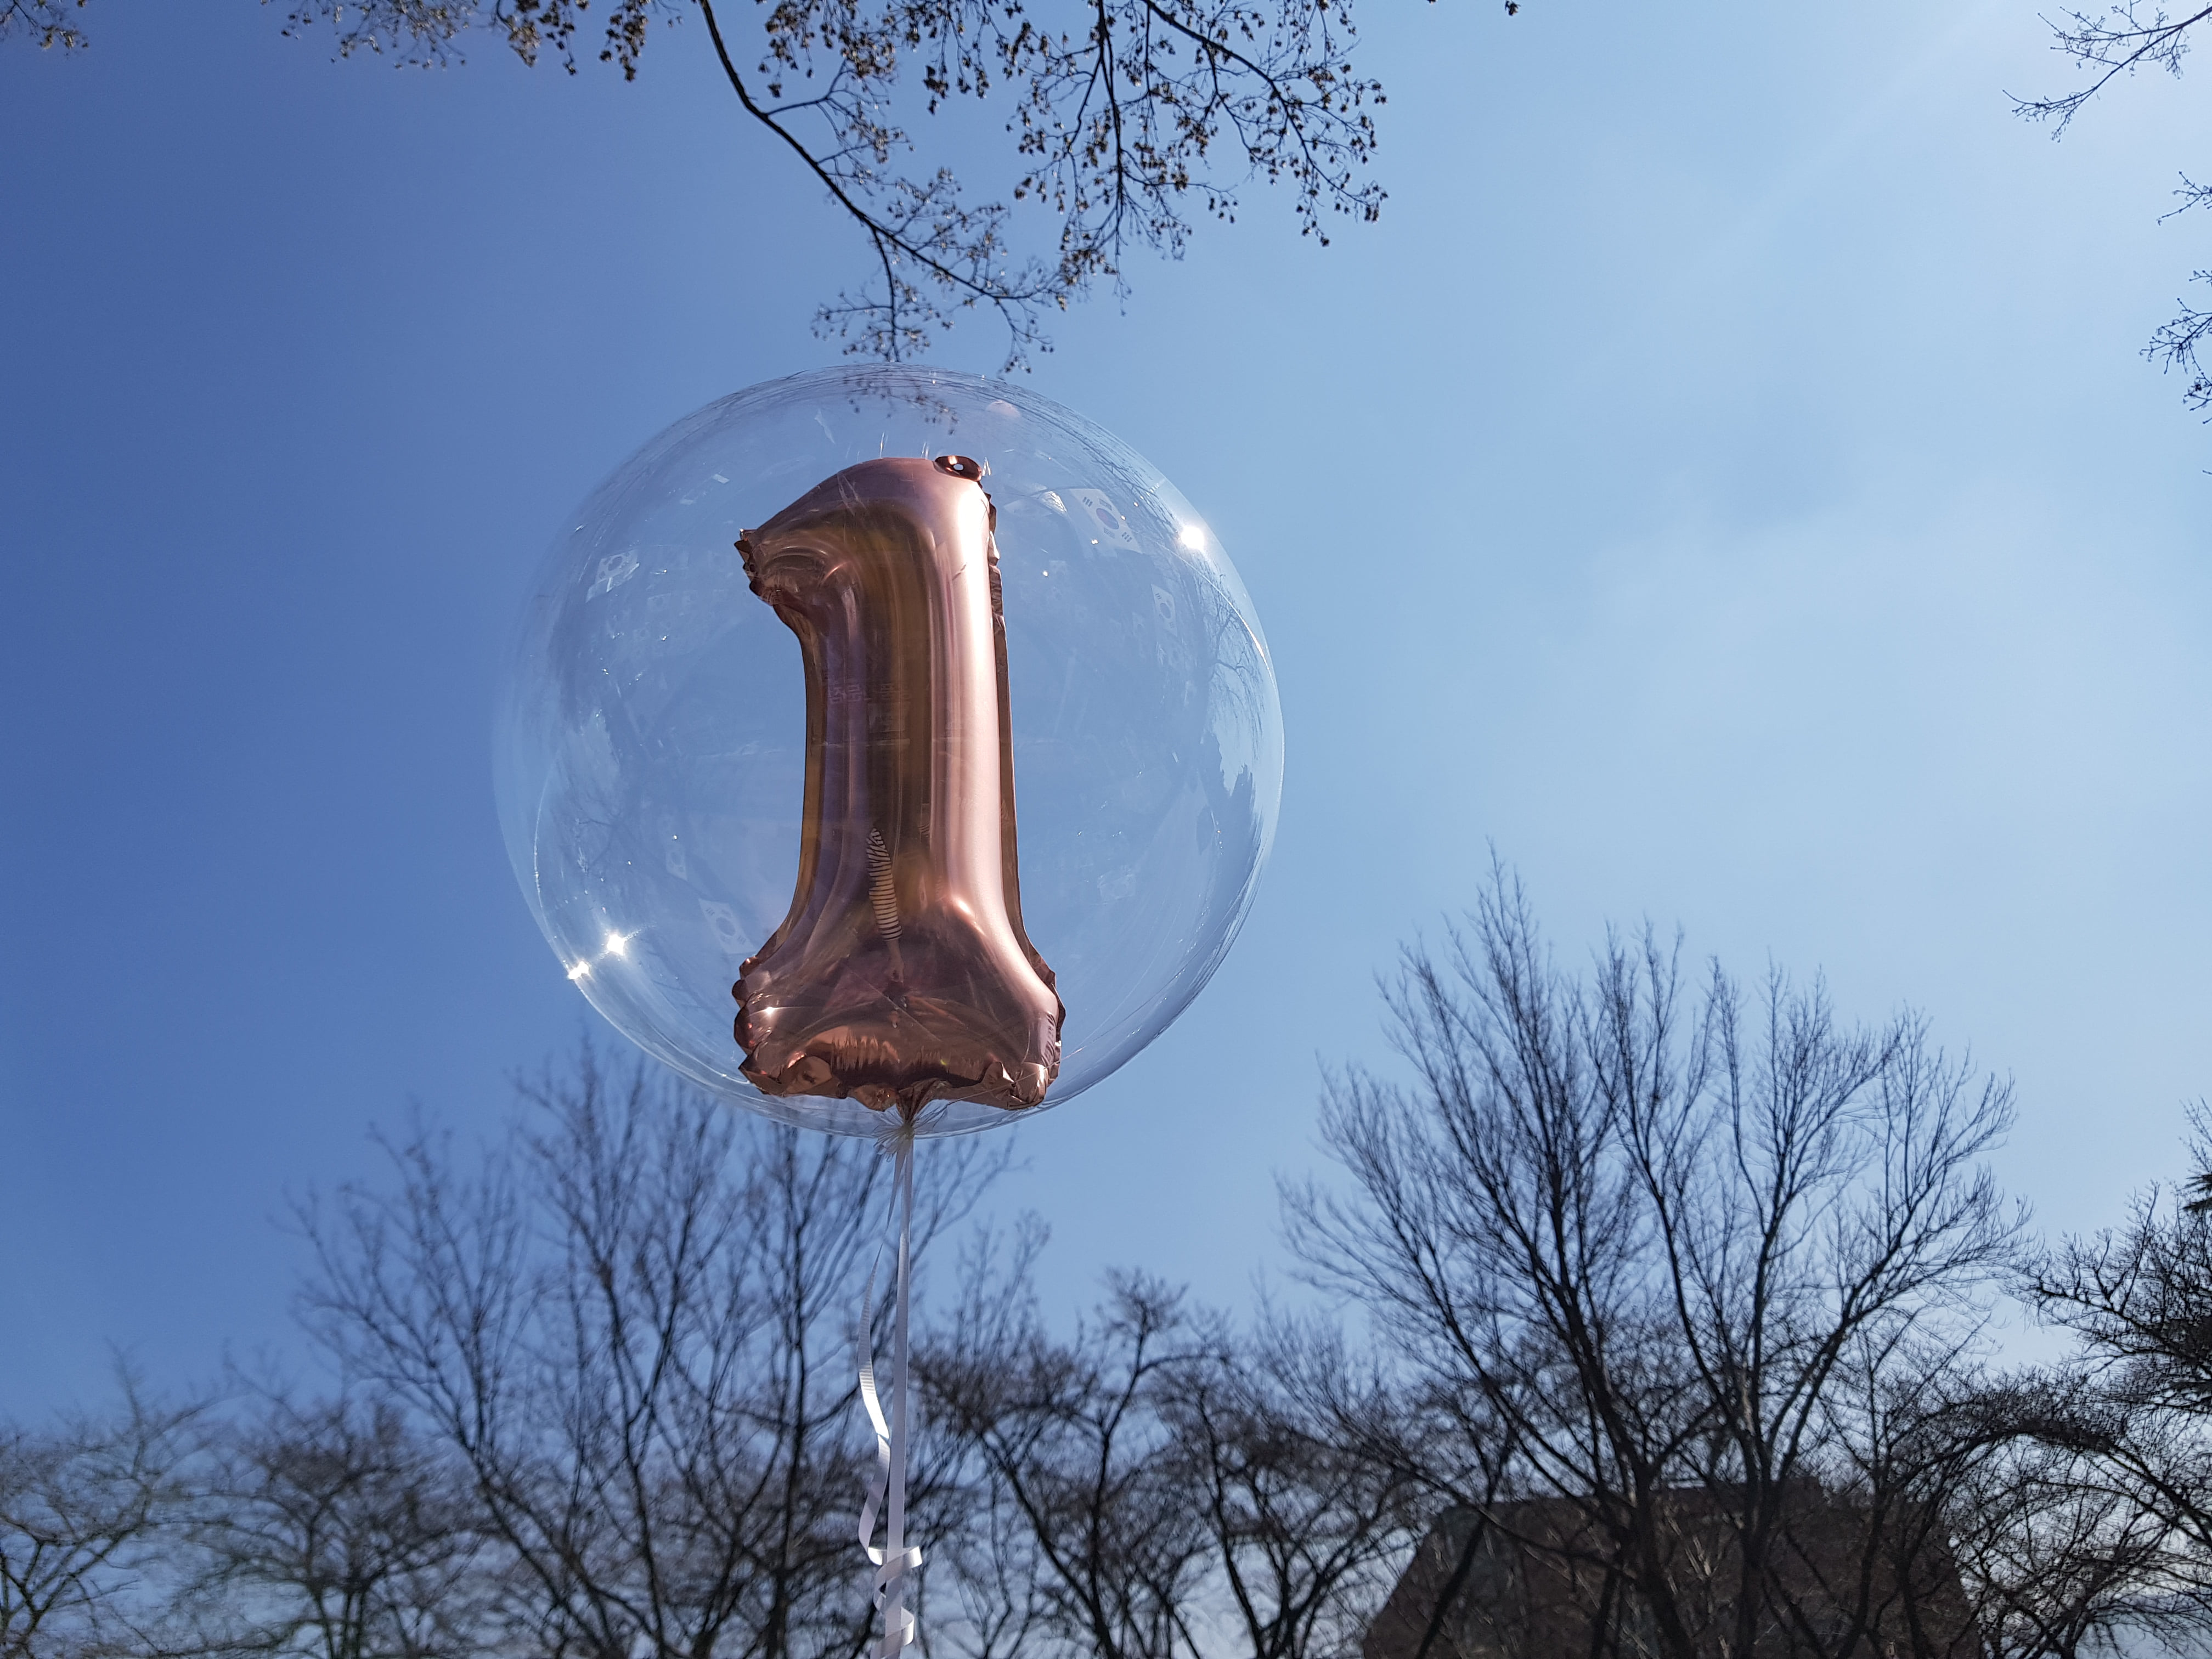 헬륨풍선 버블벌룬 인 알파벳풍선대구헬륨풍선, 100일 기념일 컨셉풍선파티용품